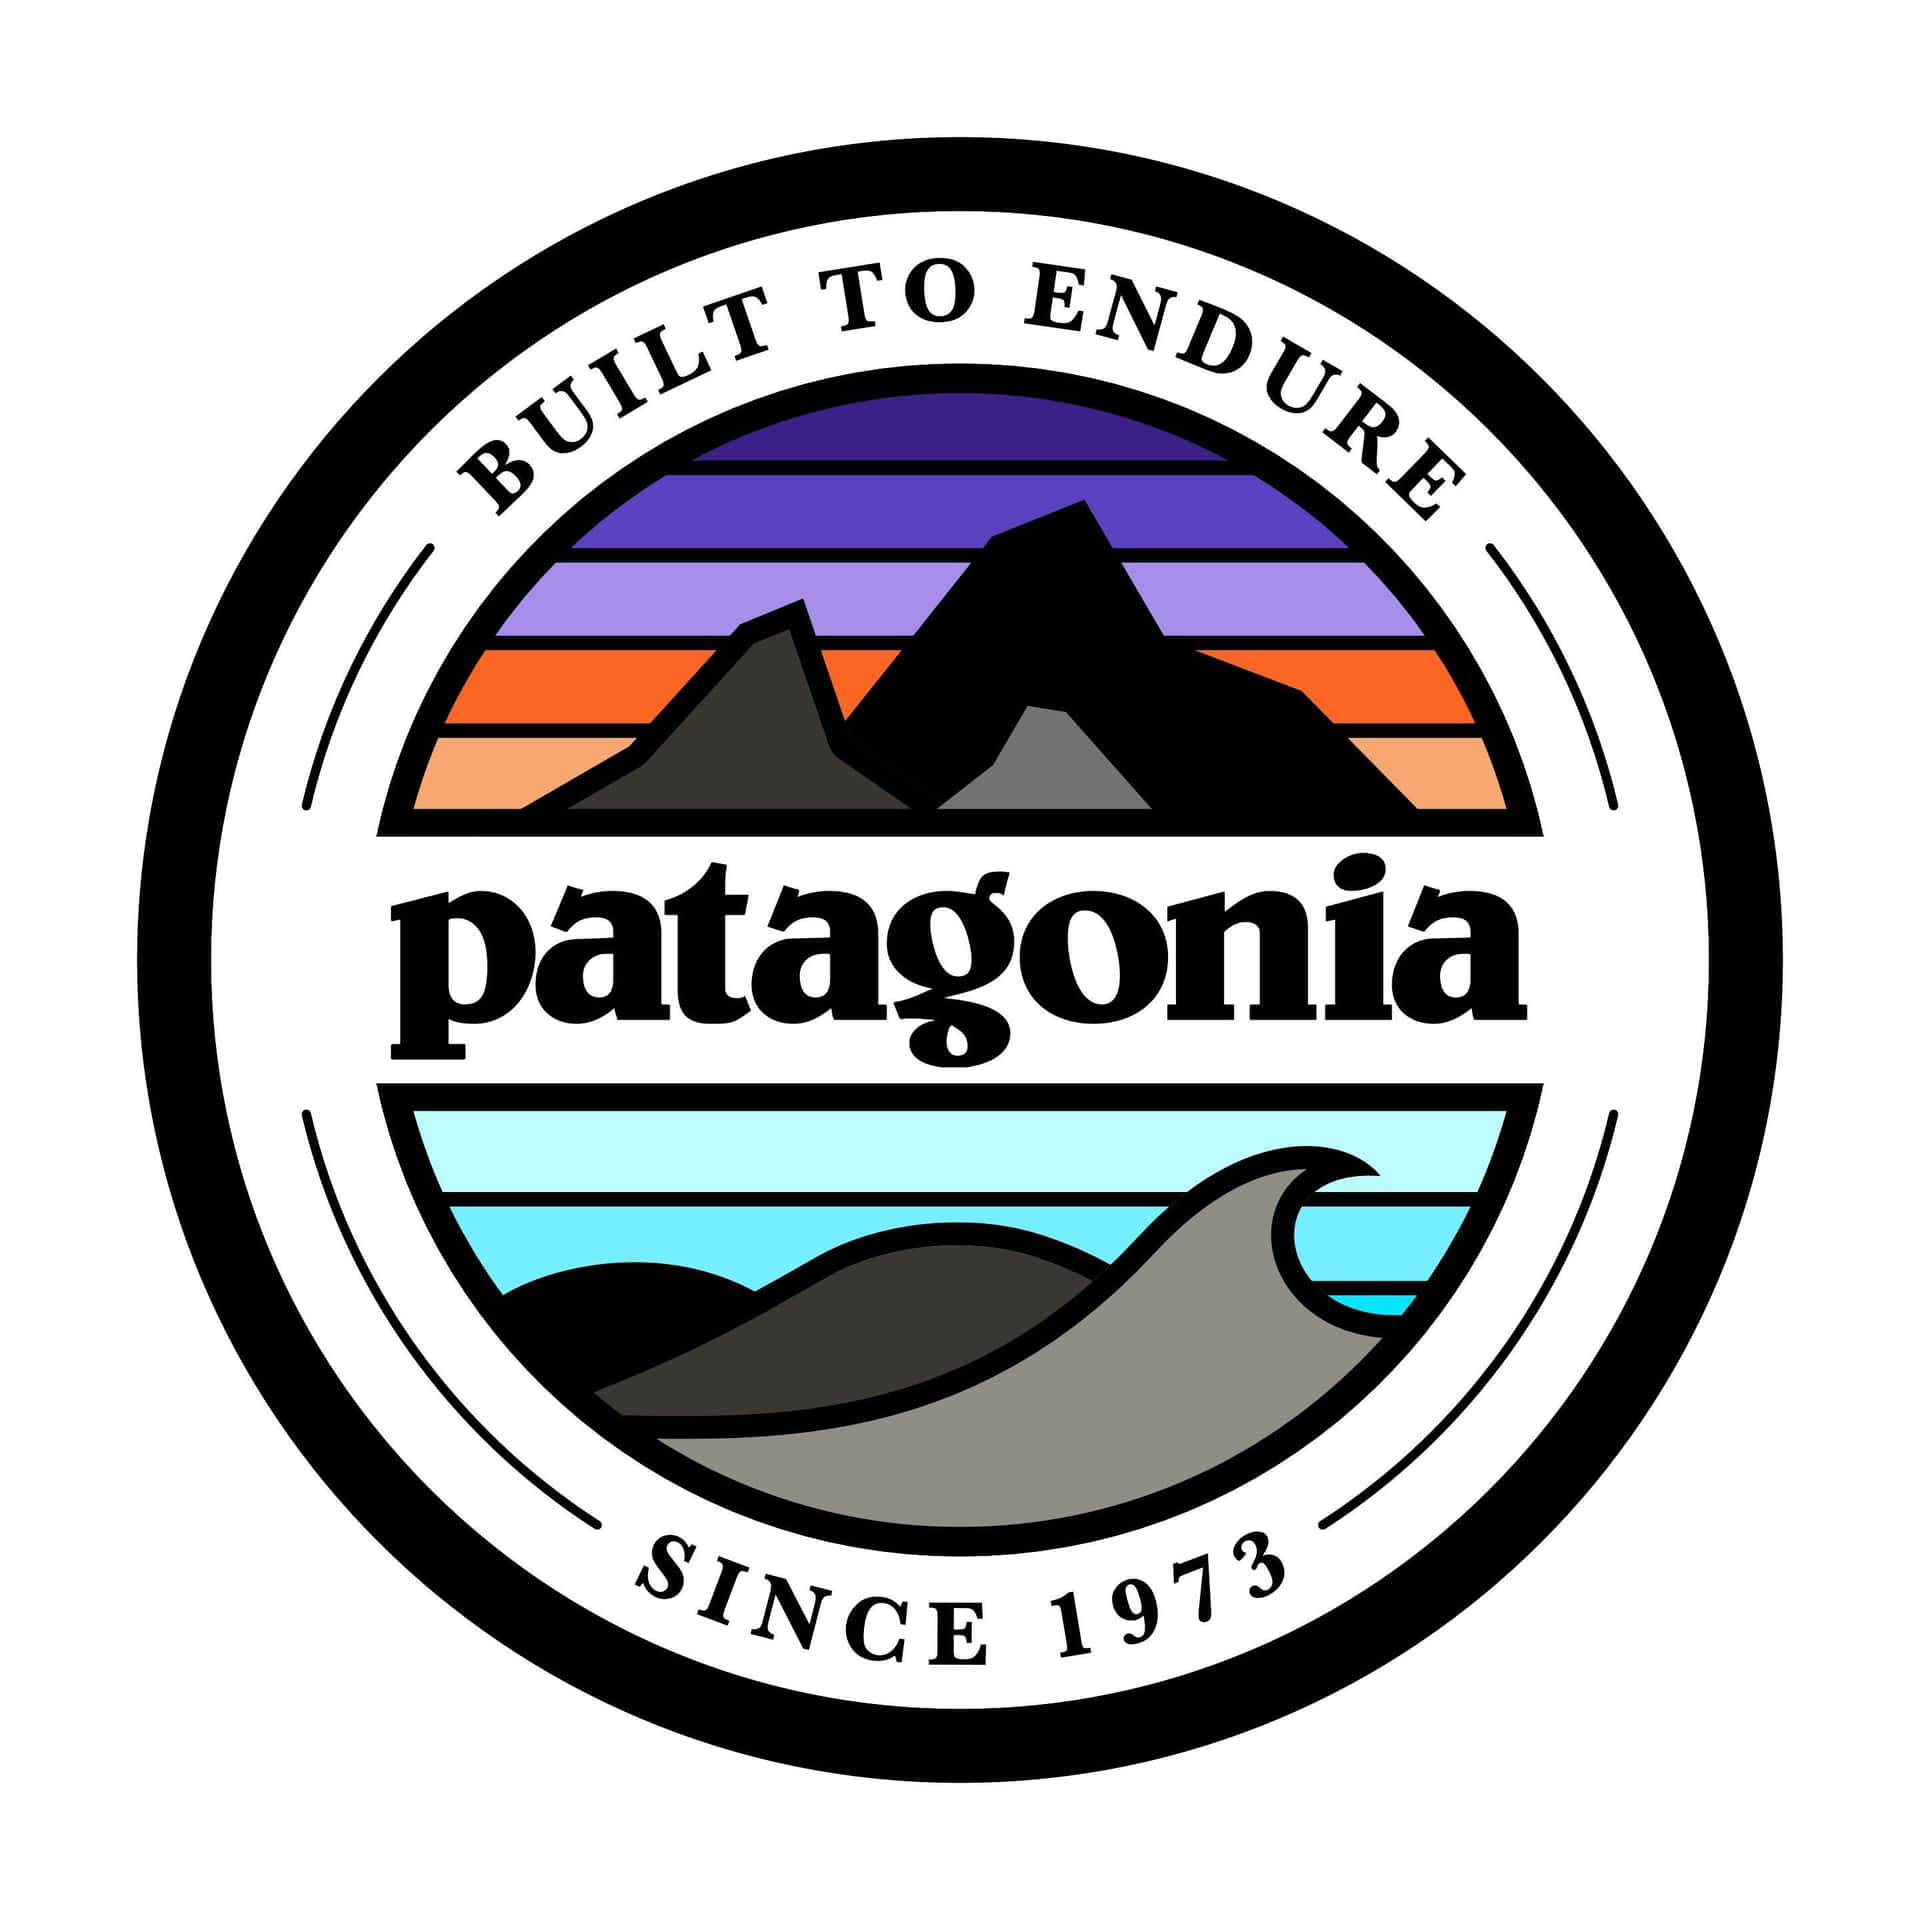 Hintergrundmit Patagonia-logo